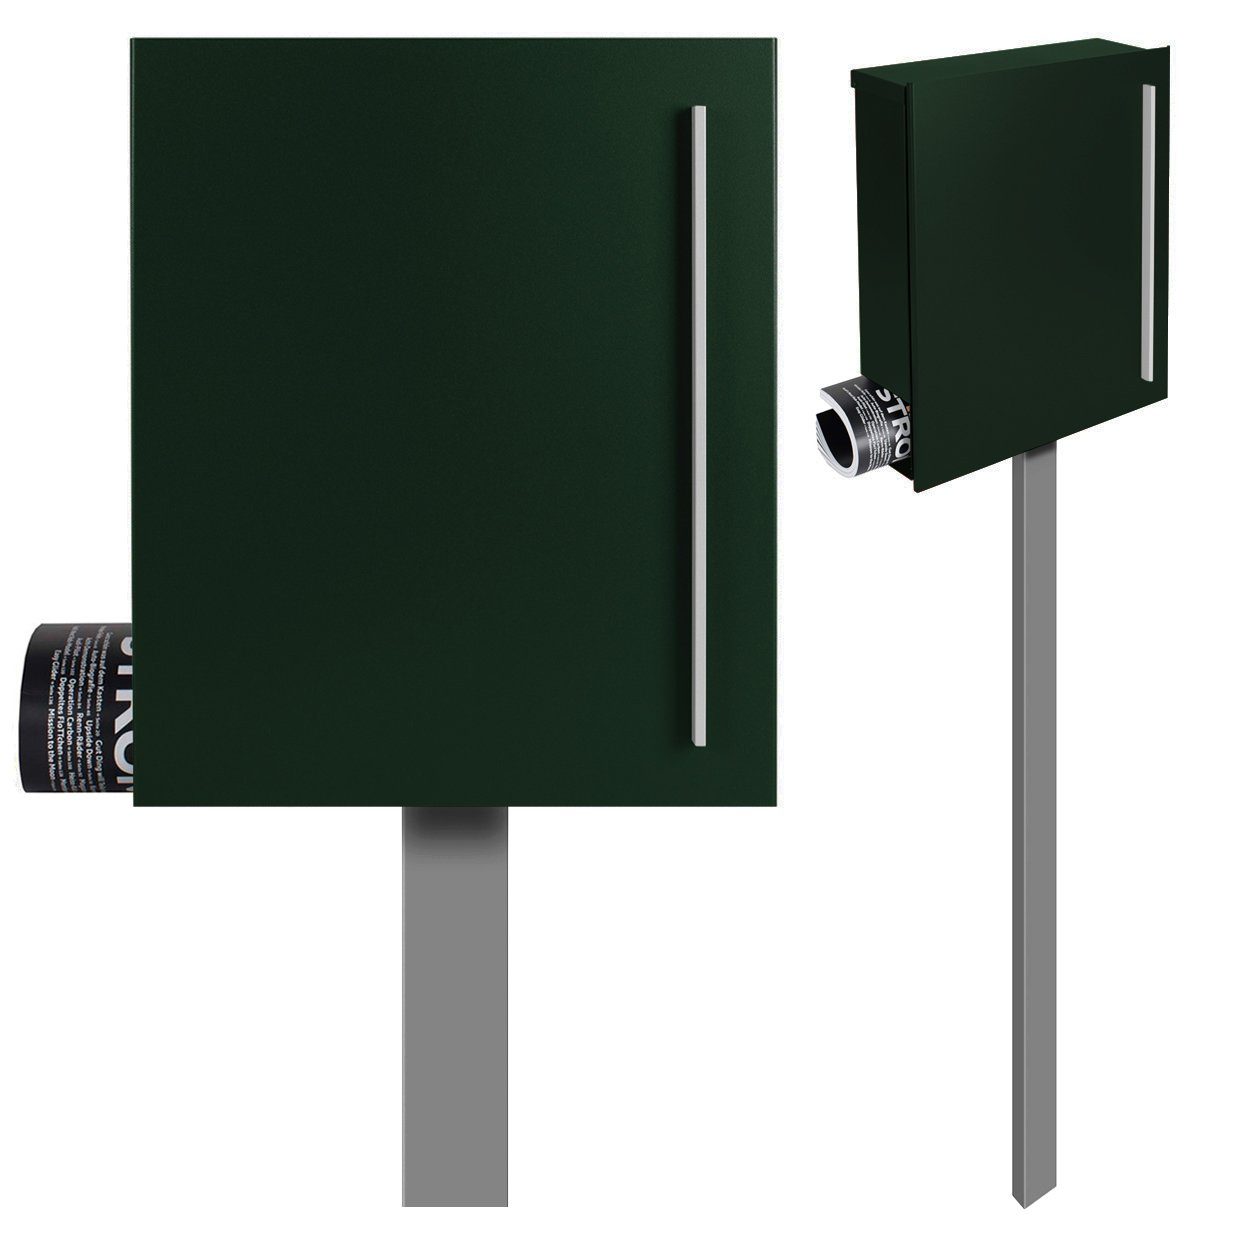 MOCAVI Briefkasten Standbriefkasten mit Zeitungsfach tannen-grün (RAL 6009)  MOCAVI SBox 110b Briefkasten mit Pfosten (einbetonieren), integriert;  passender Verschluss (zusätzlich bestellbar) für Wetterseite, beidseitig  nutzbar: Box Vers 1 VA